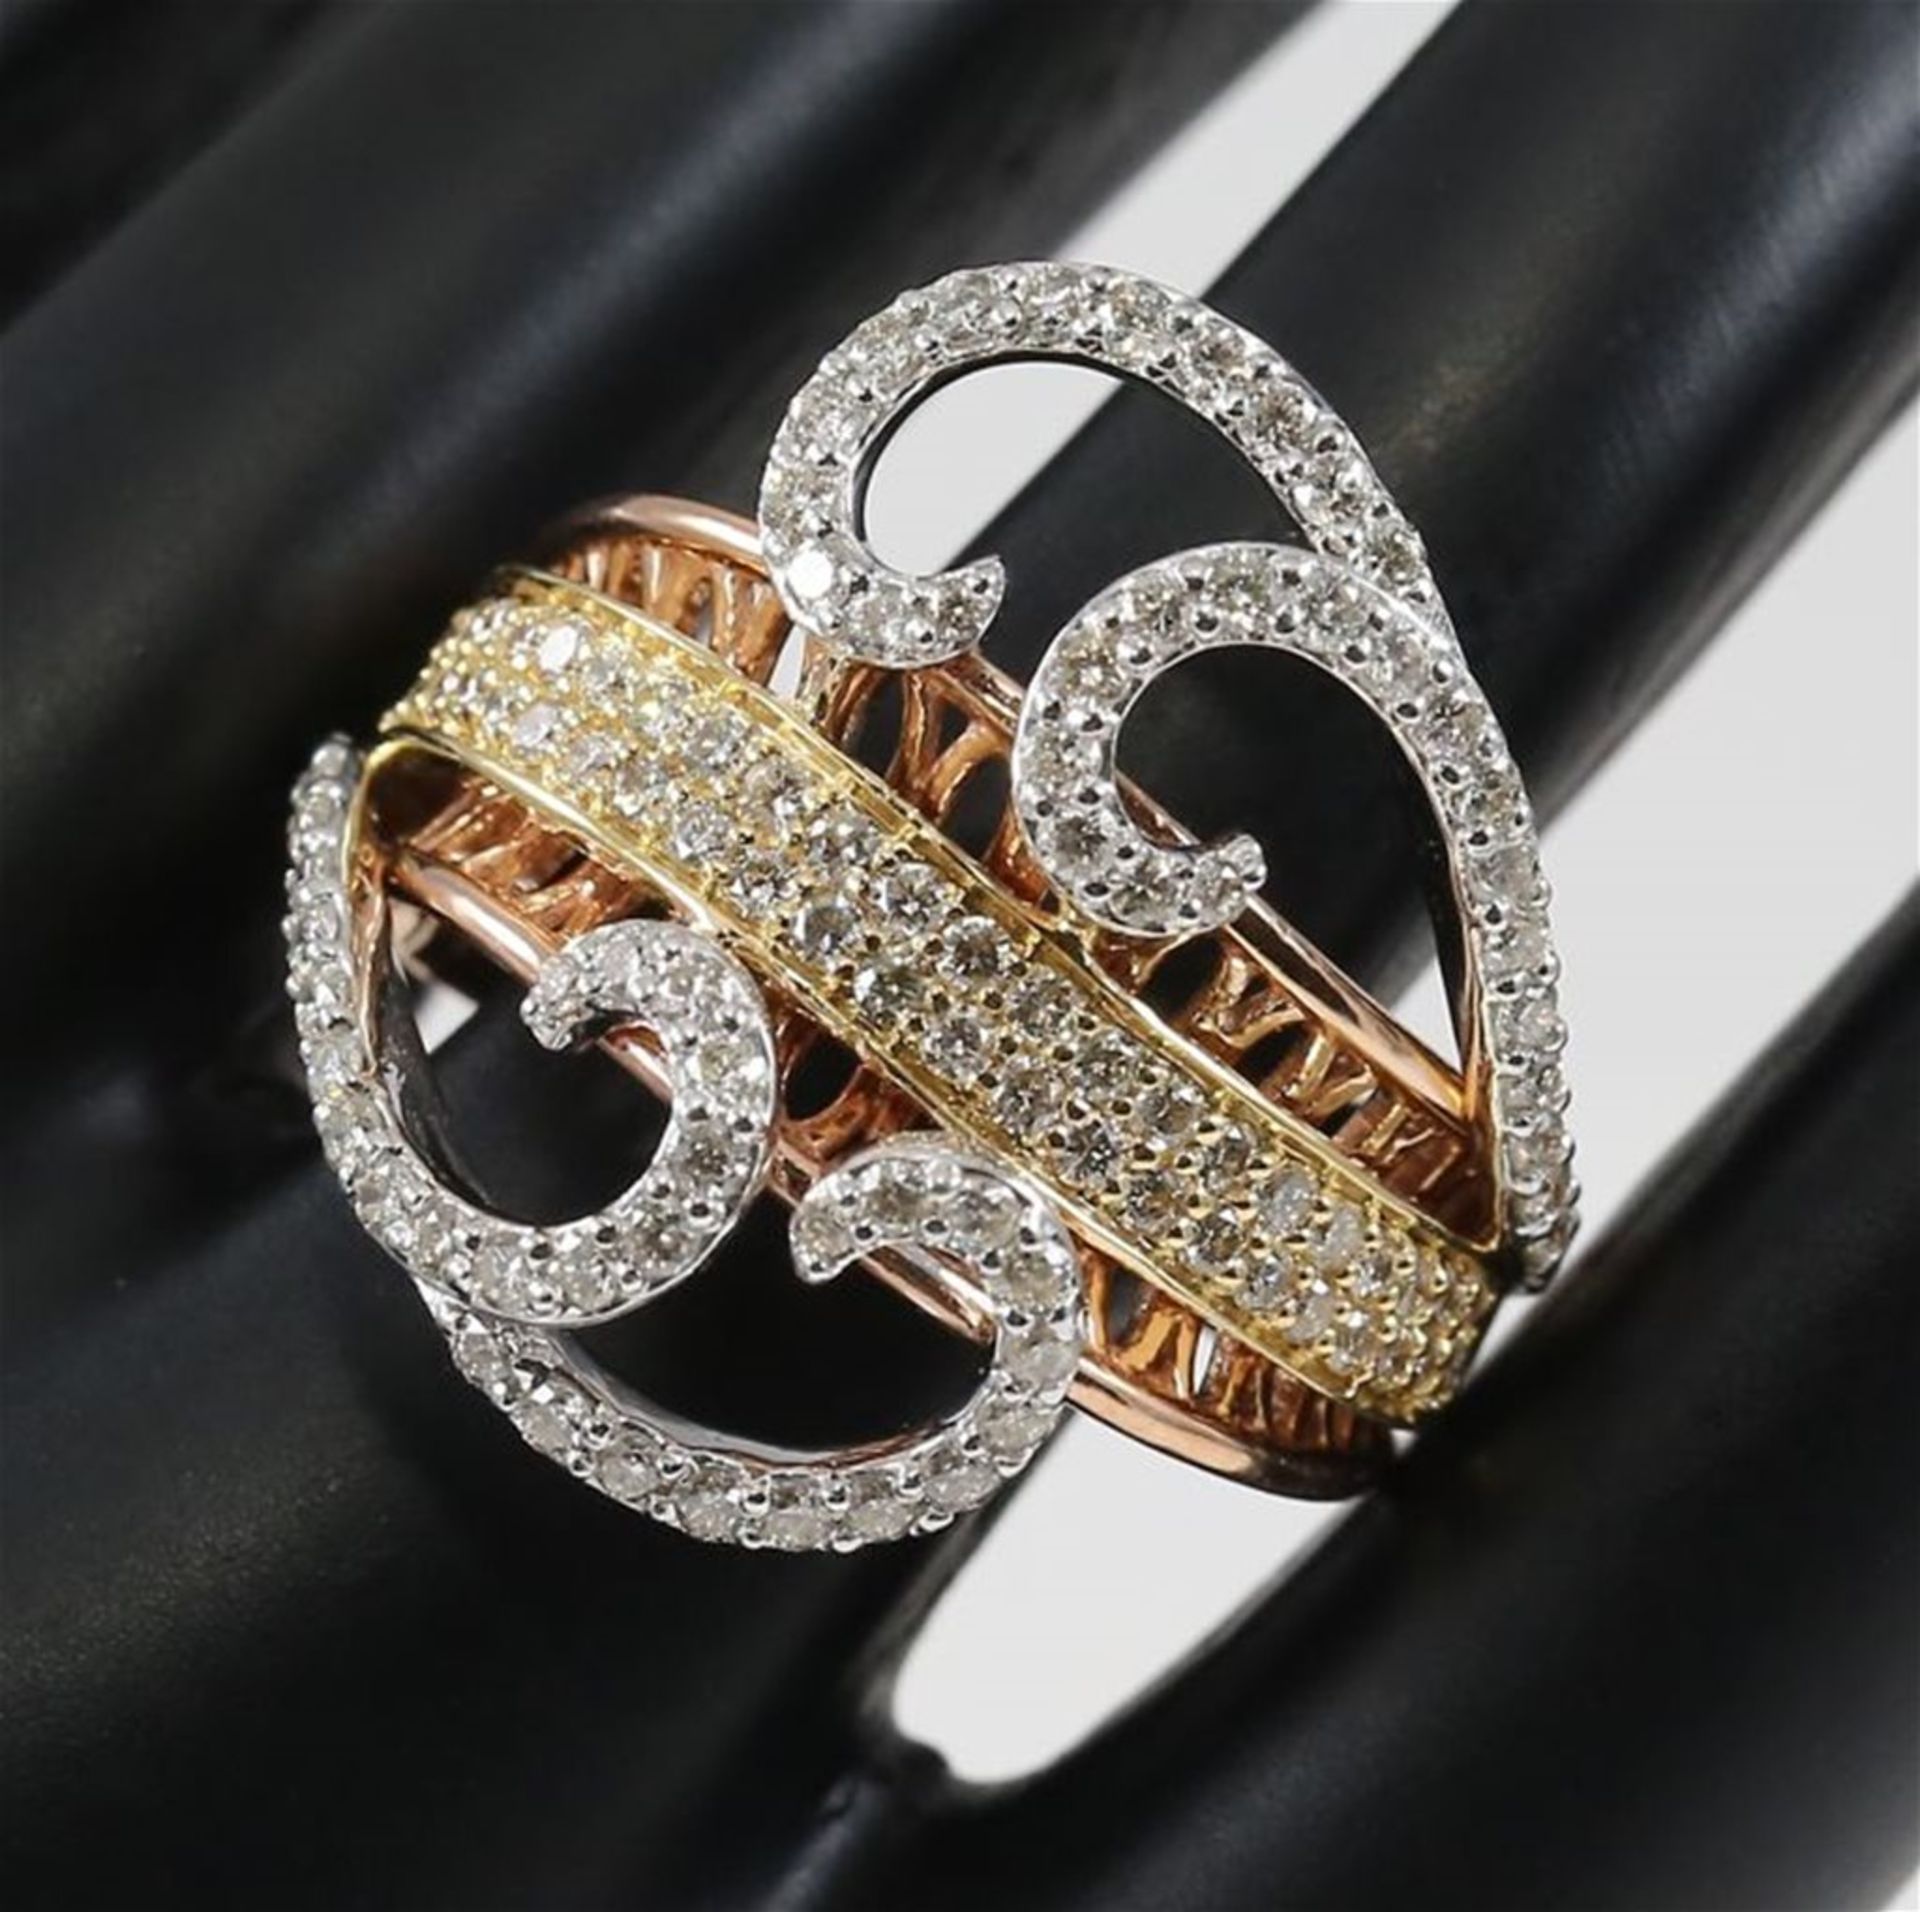 IGI Certified 18 K/750 Designer Diamond Ring - Image 7 of 10